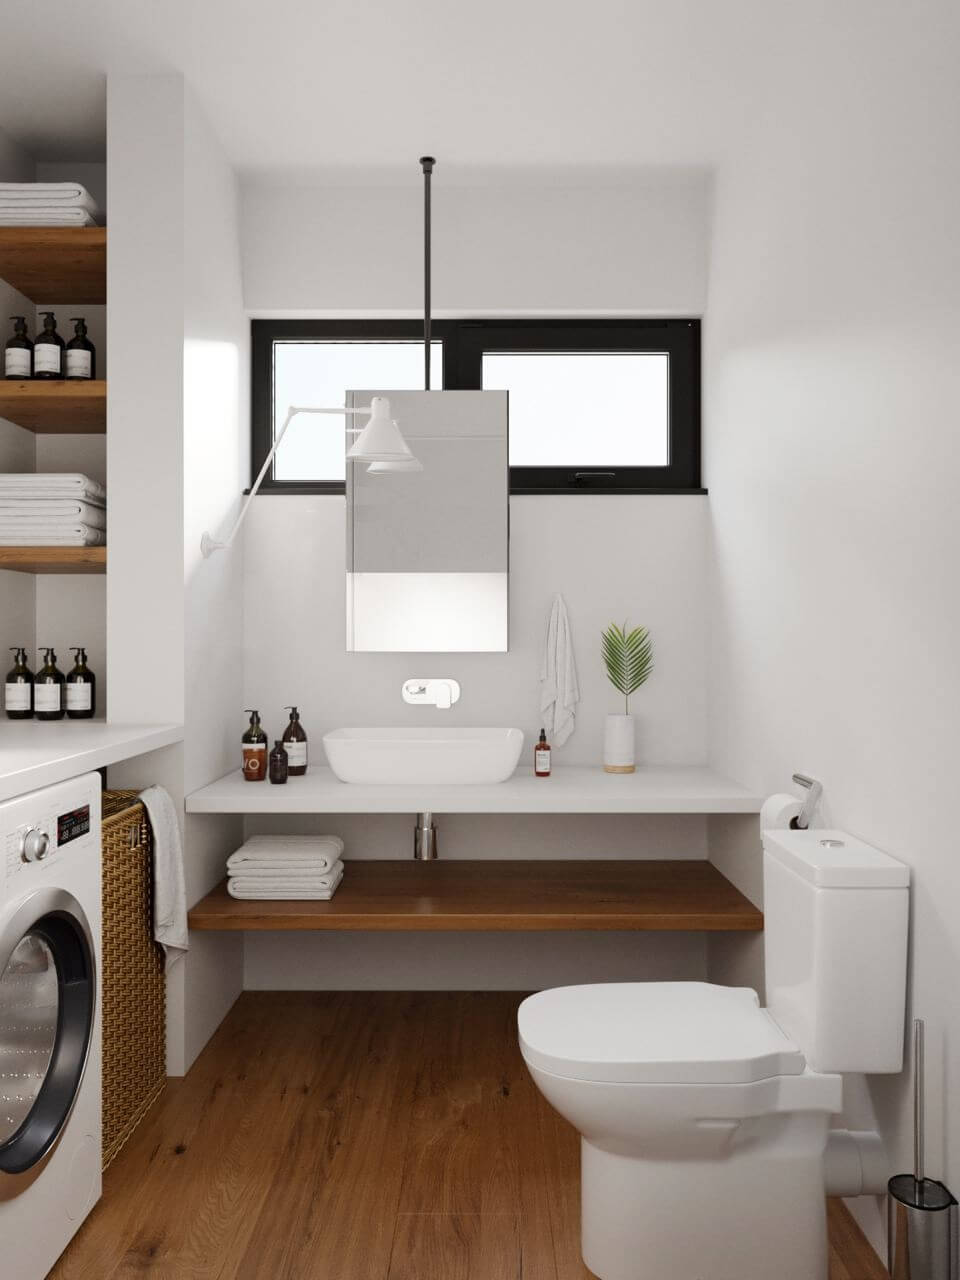 Как в маленькой ванной комнате разместить стиральную машину и раковину: советы с фото-примерами